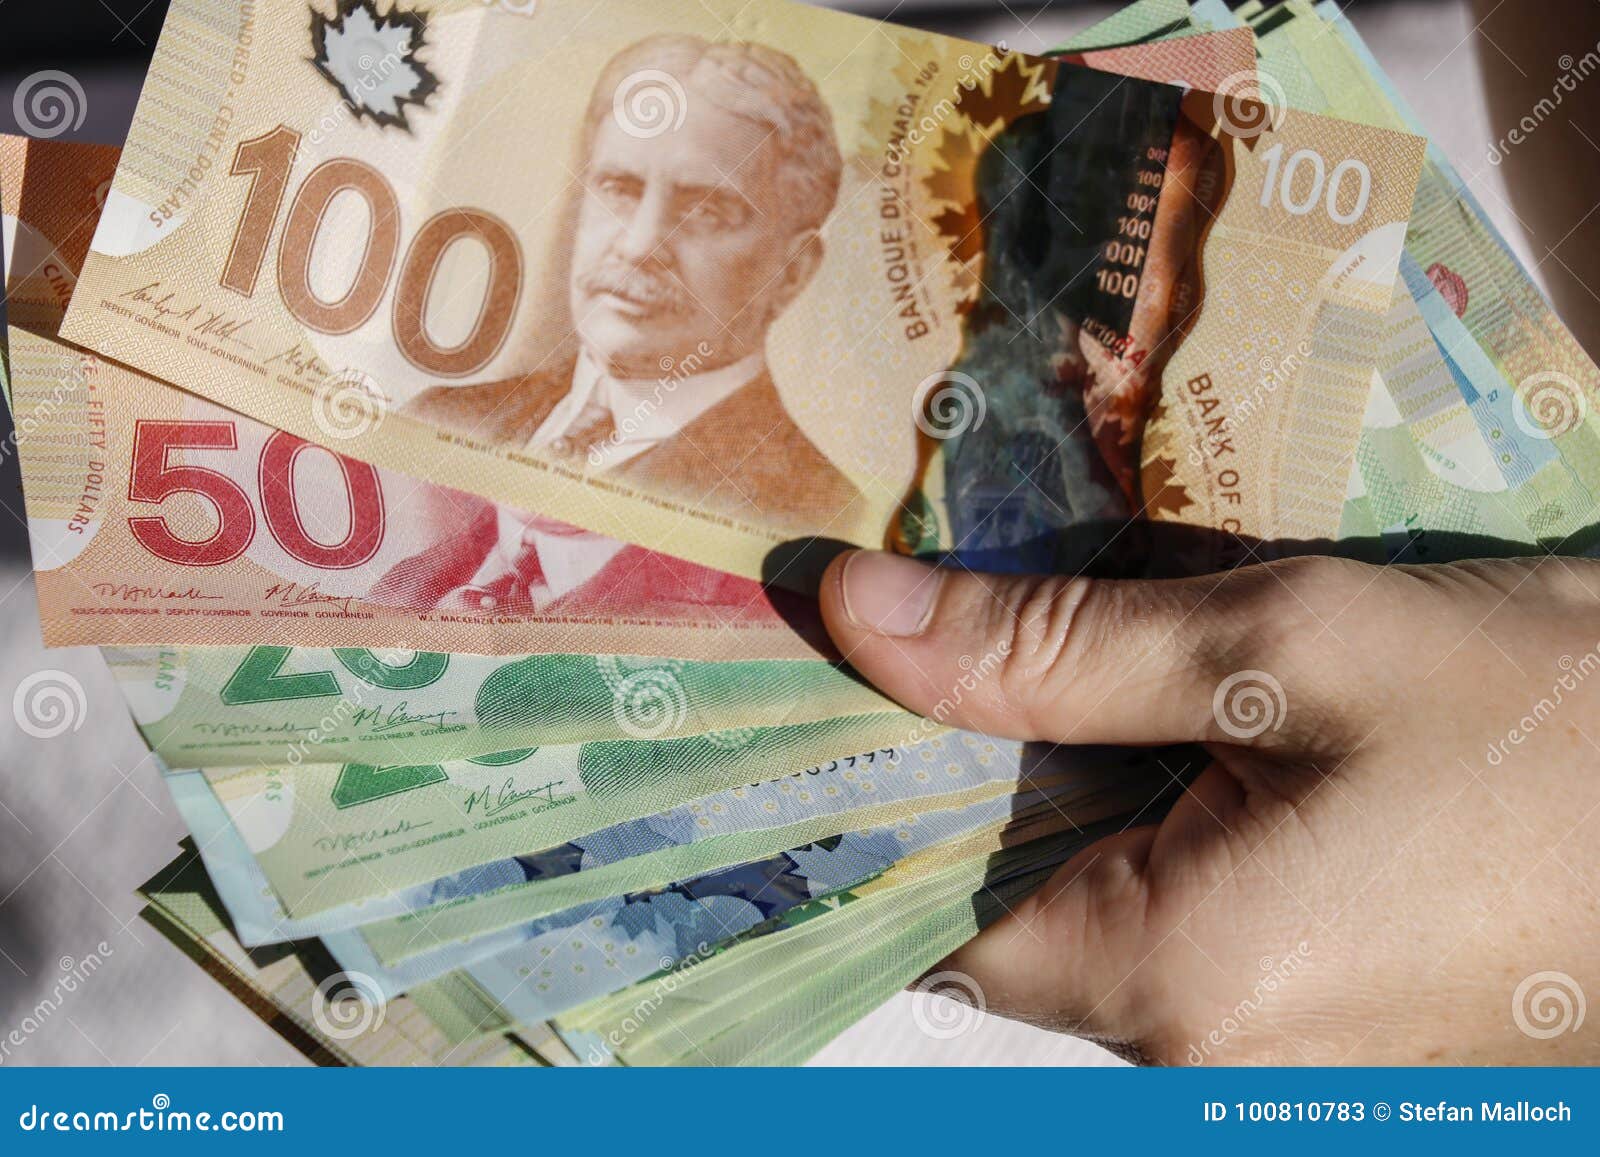 canadian money forum investing